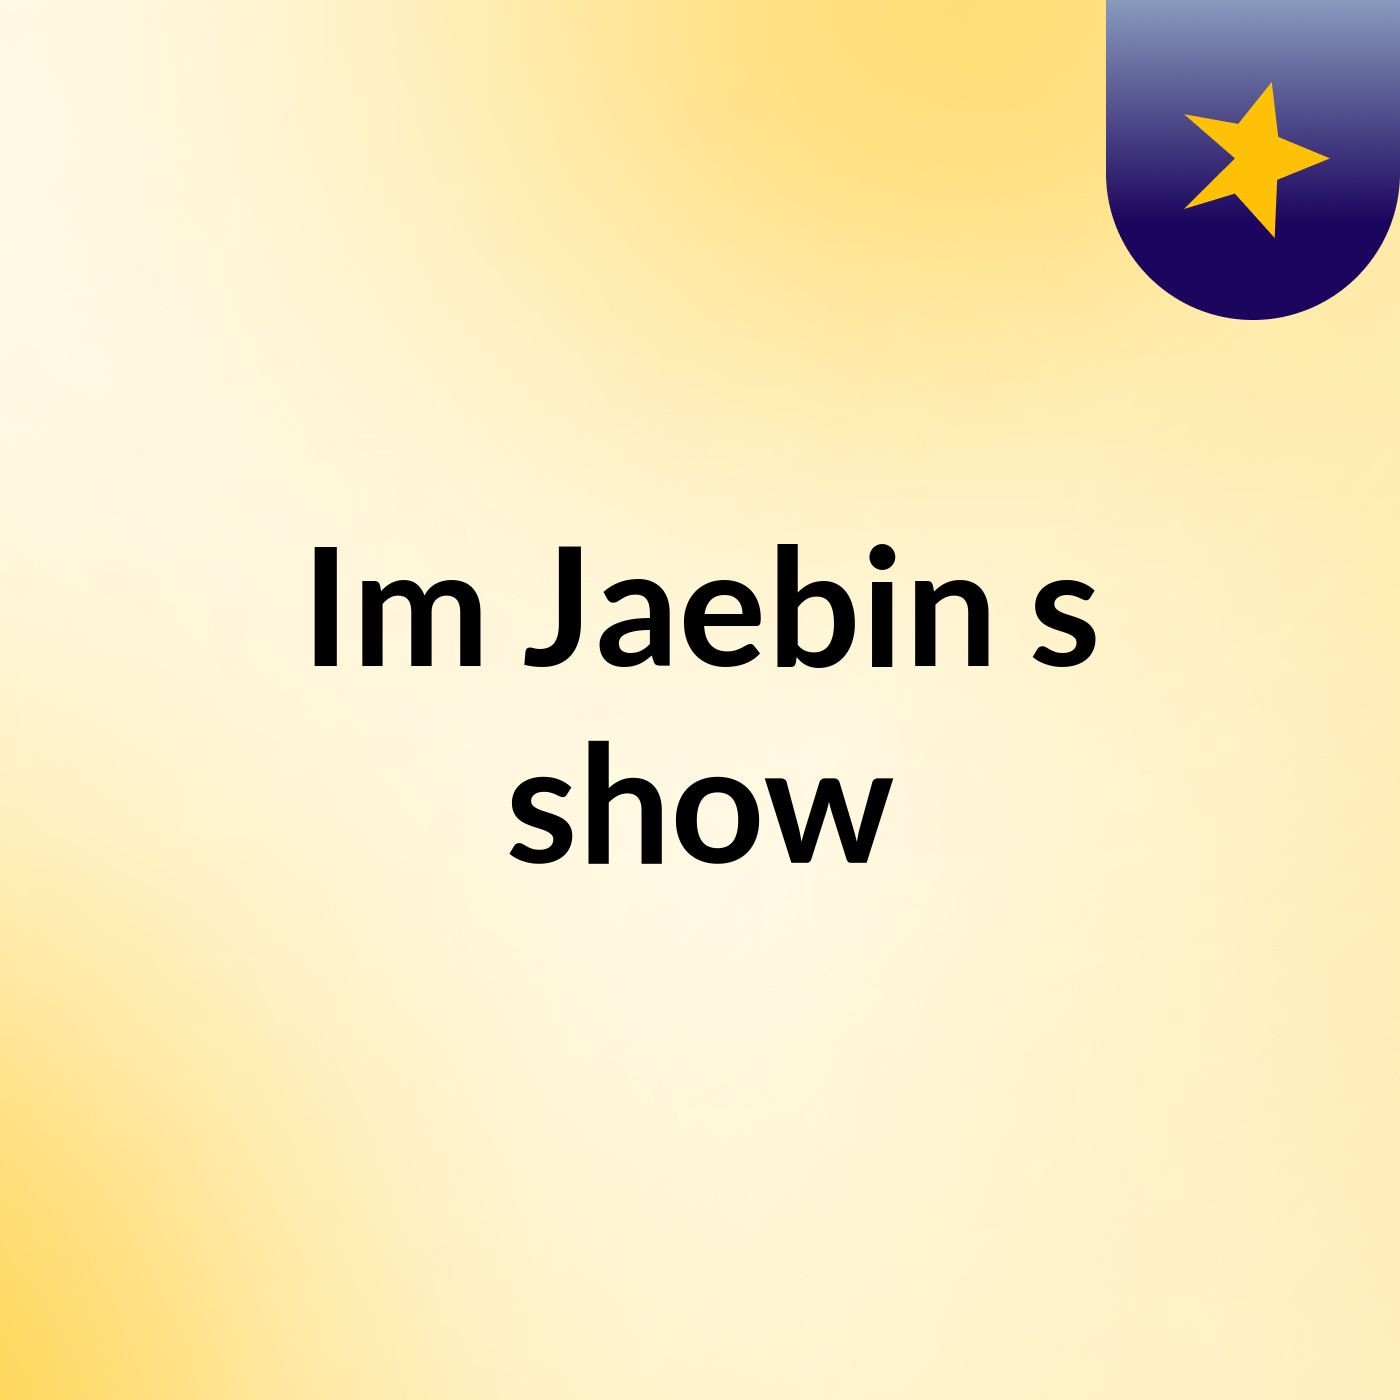 Im Jaebin's show